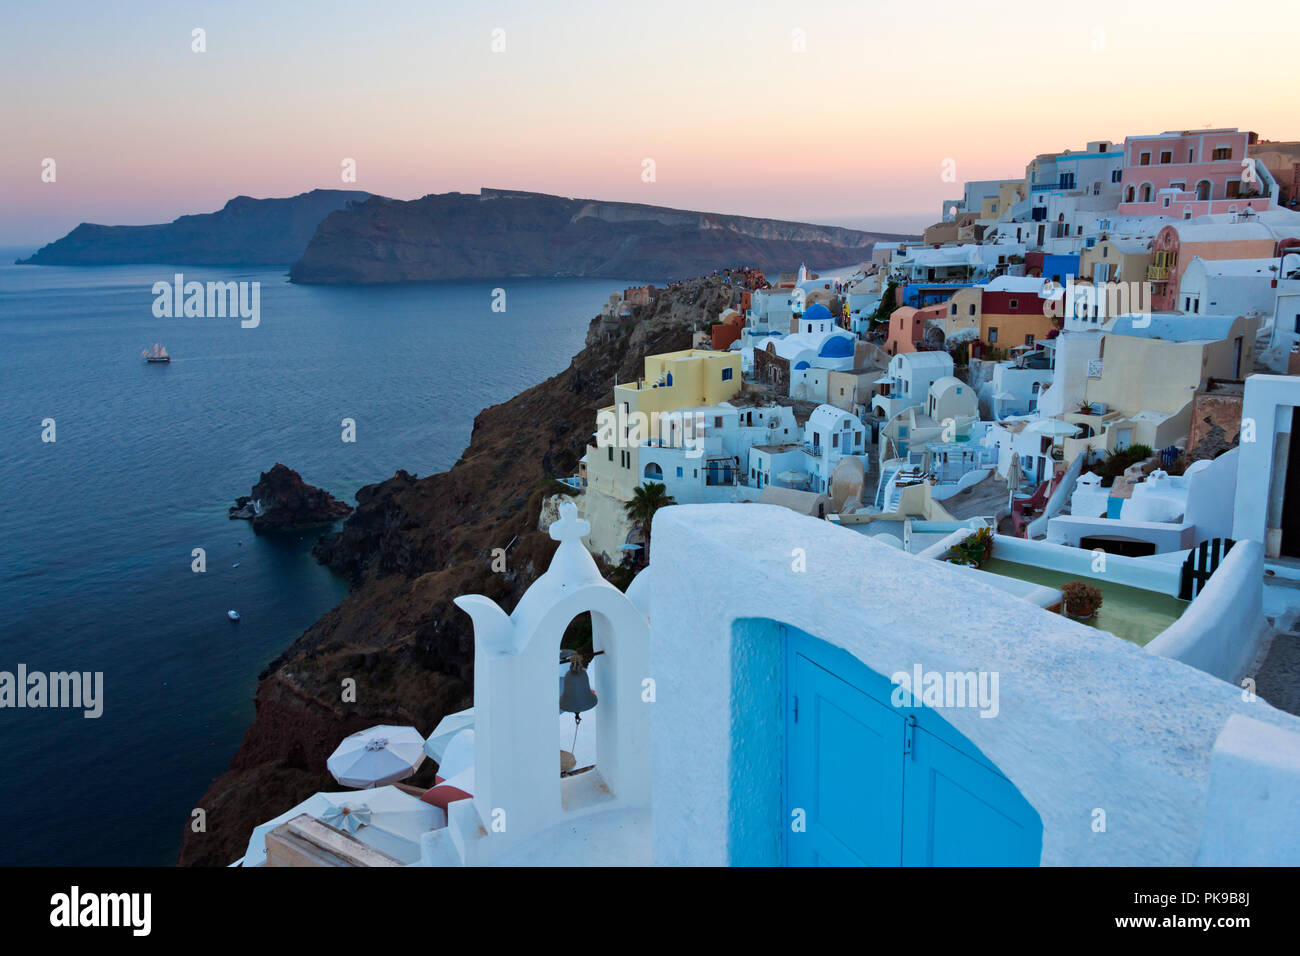 Houses on the coast of Aegean Sea, Oia, Santorini Island, Greece Stock Photo